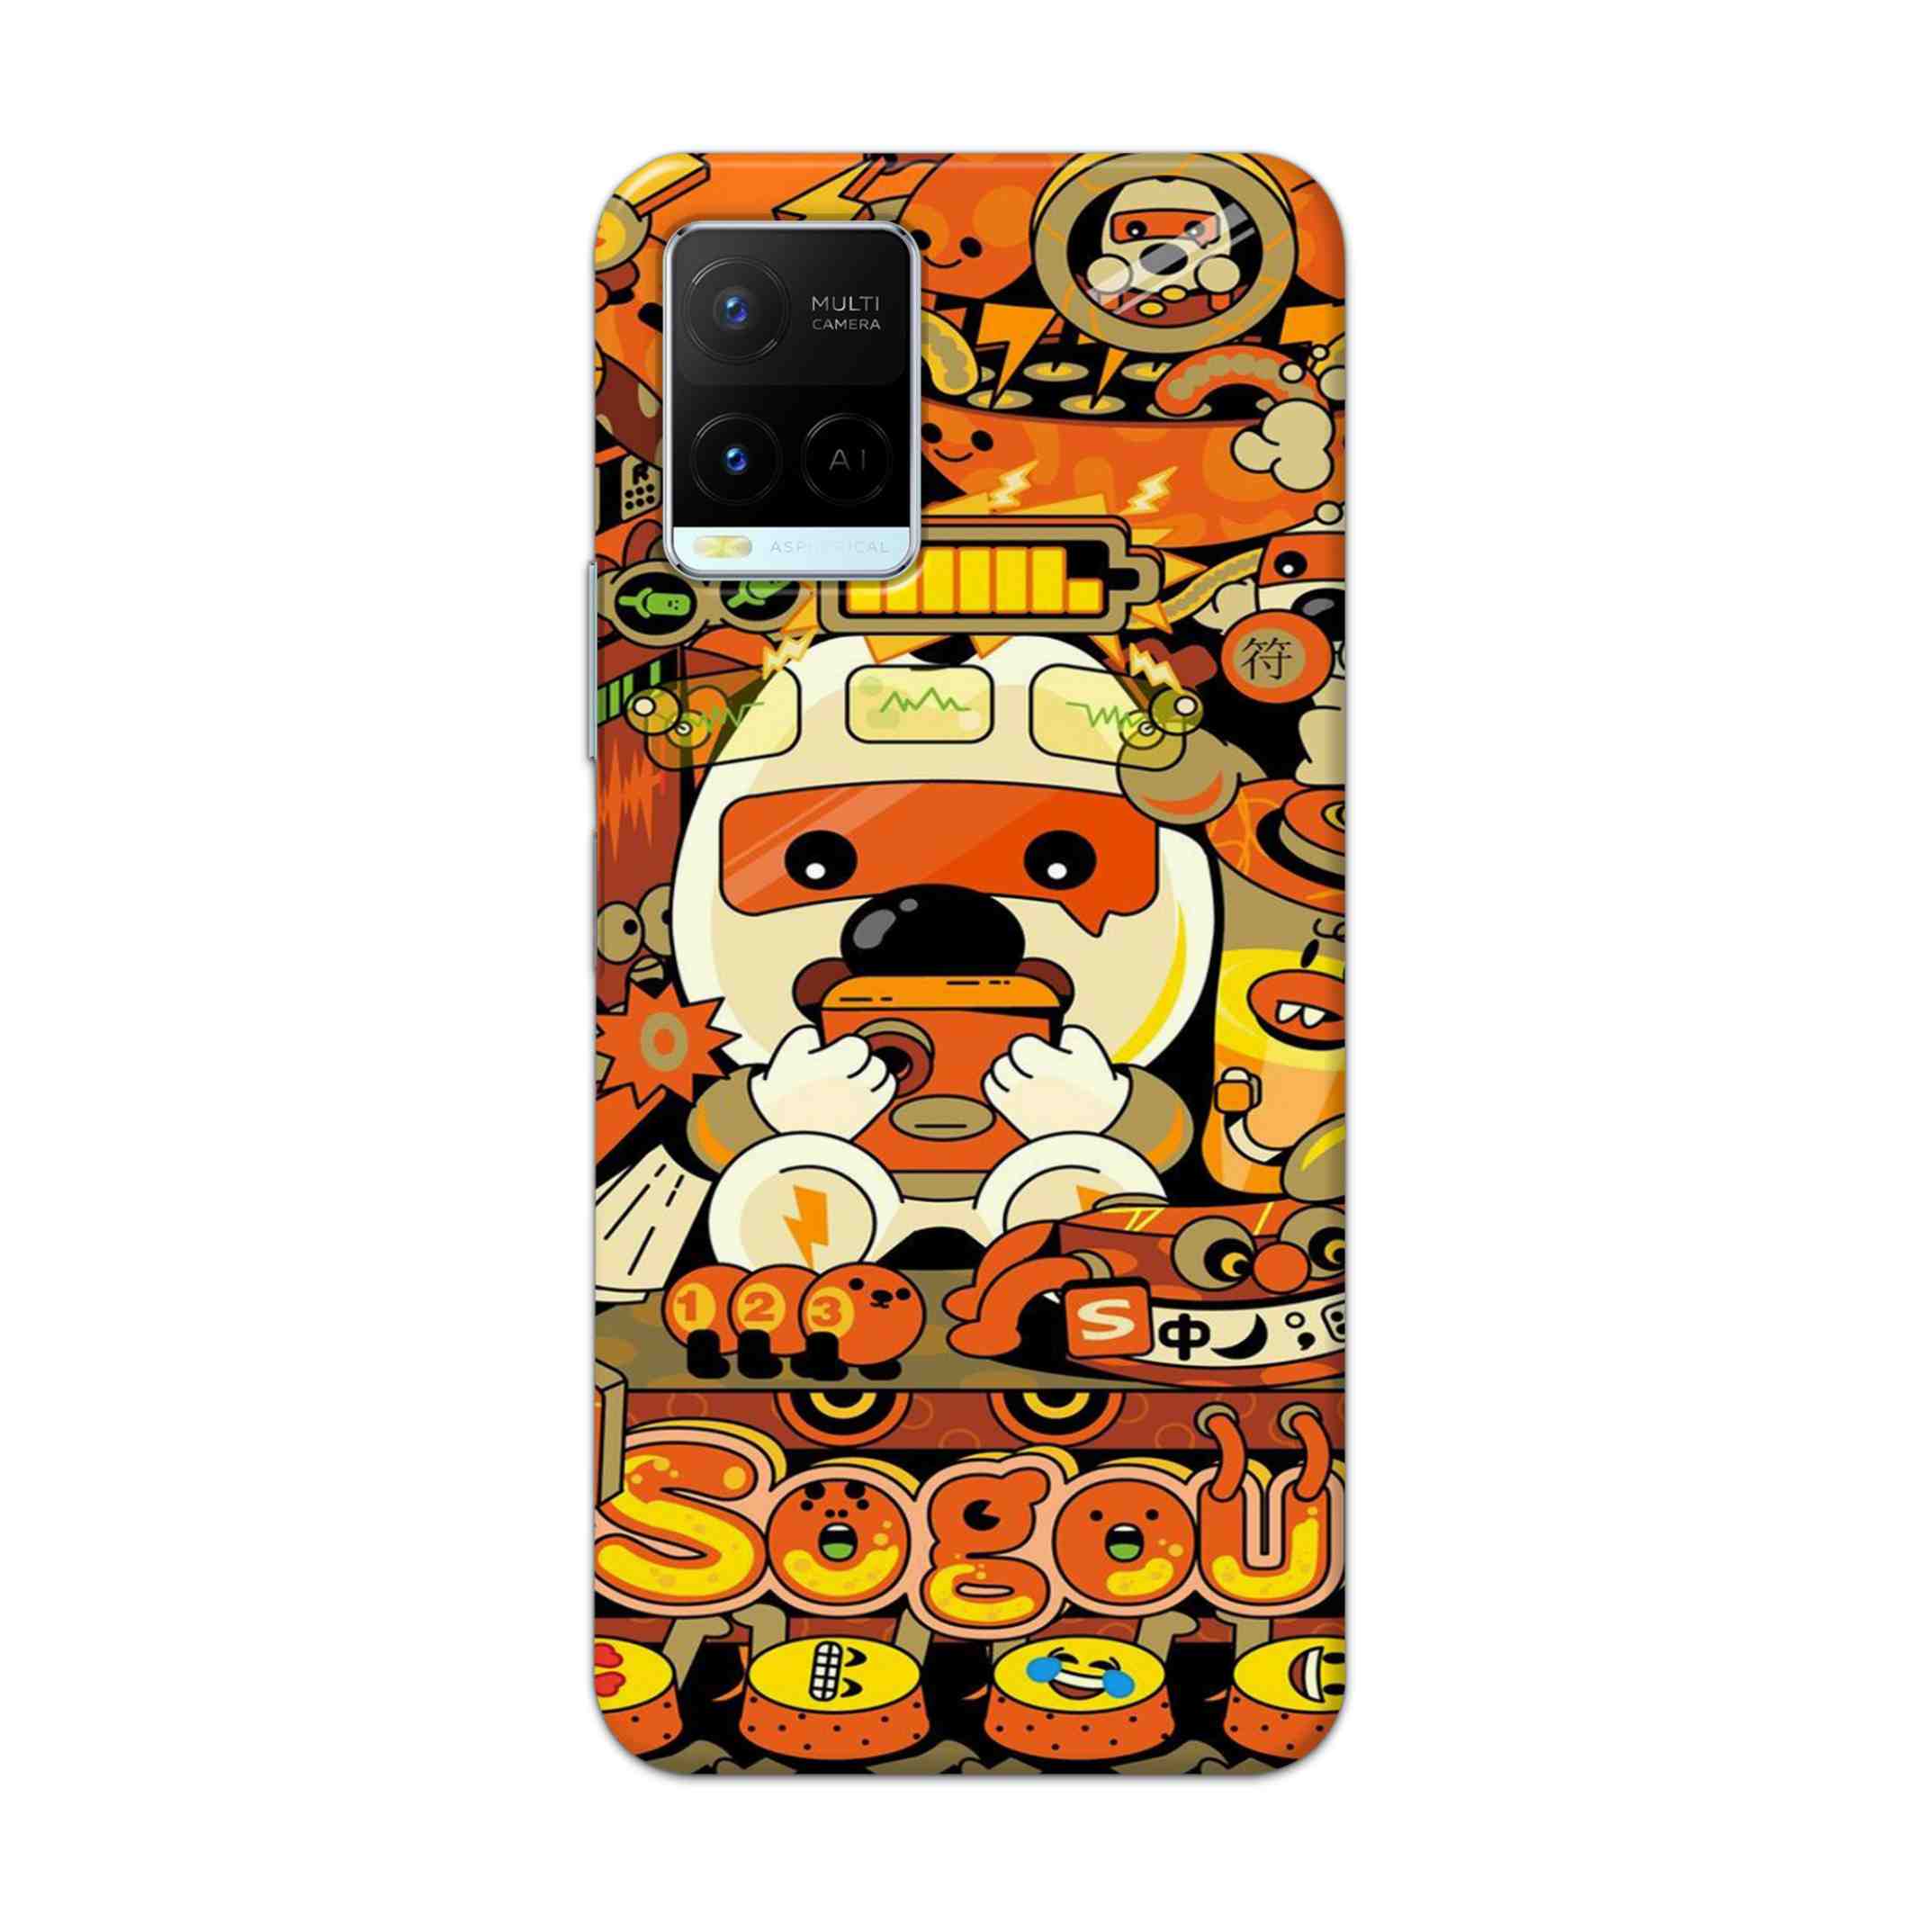 Buy Sogou Hard Back Mobile Phone Case Cover For Vivo Y21 2021 Online